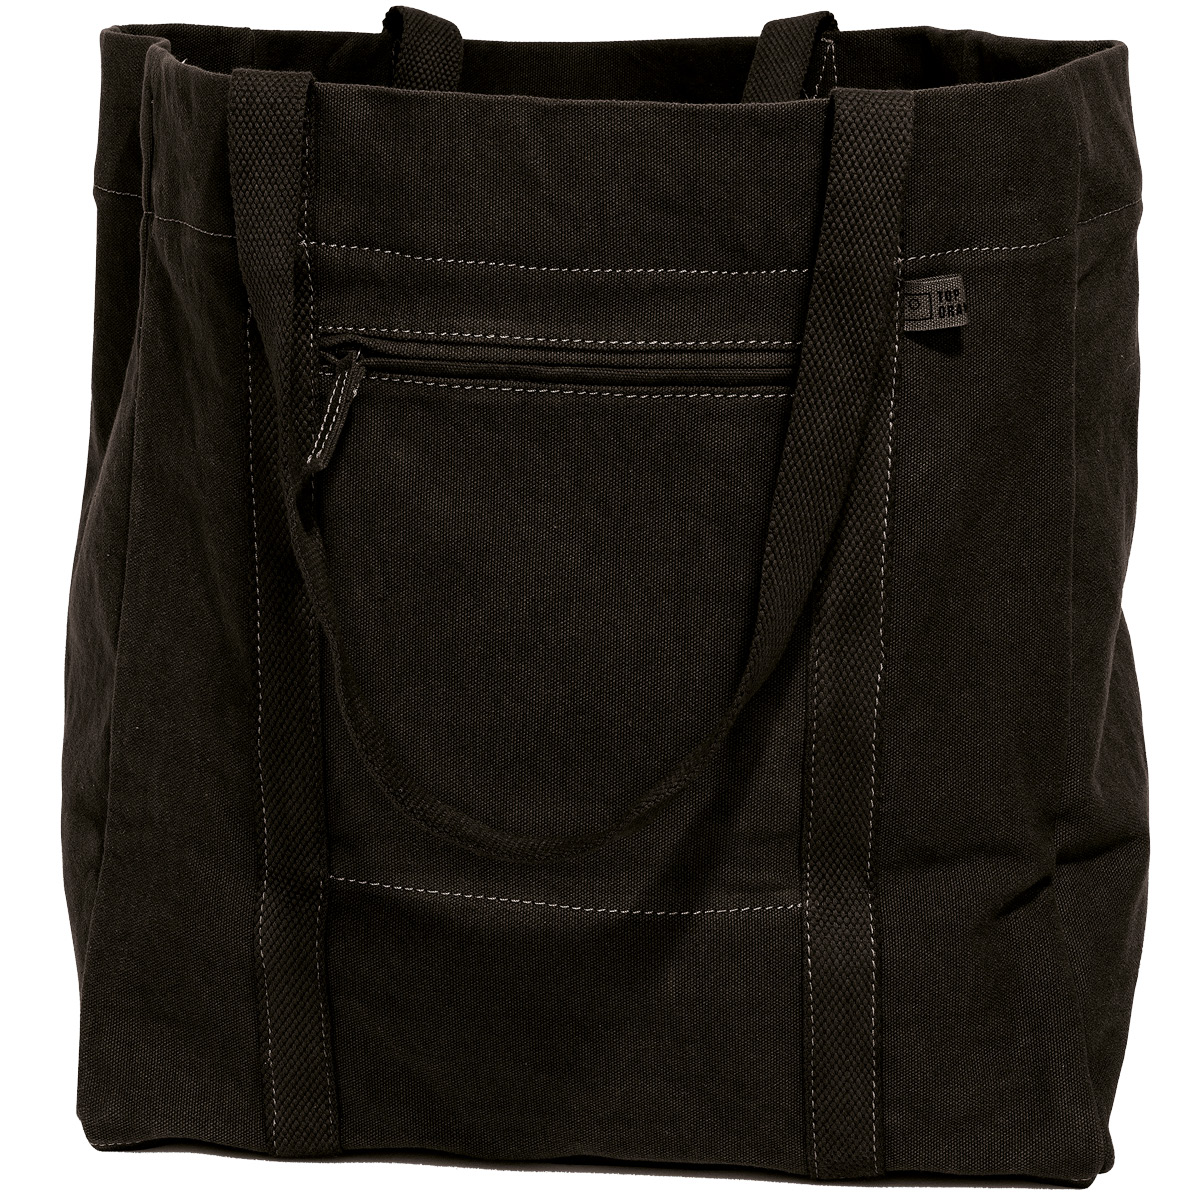 Professional Secrets - Culross Shopping Bag Kanvas Svart